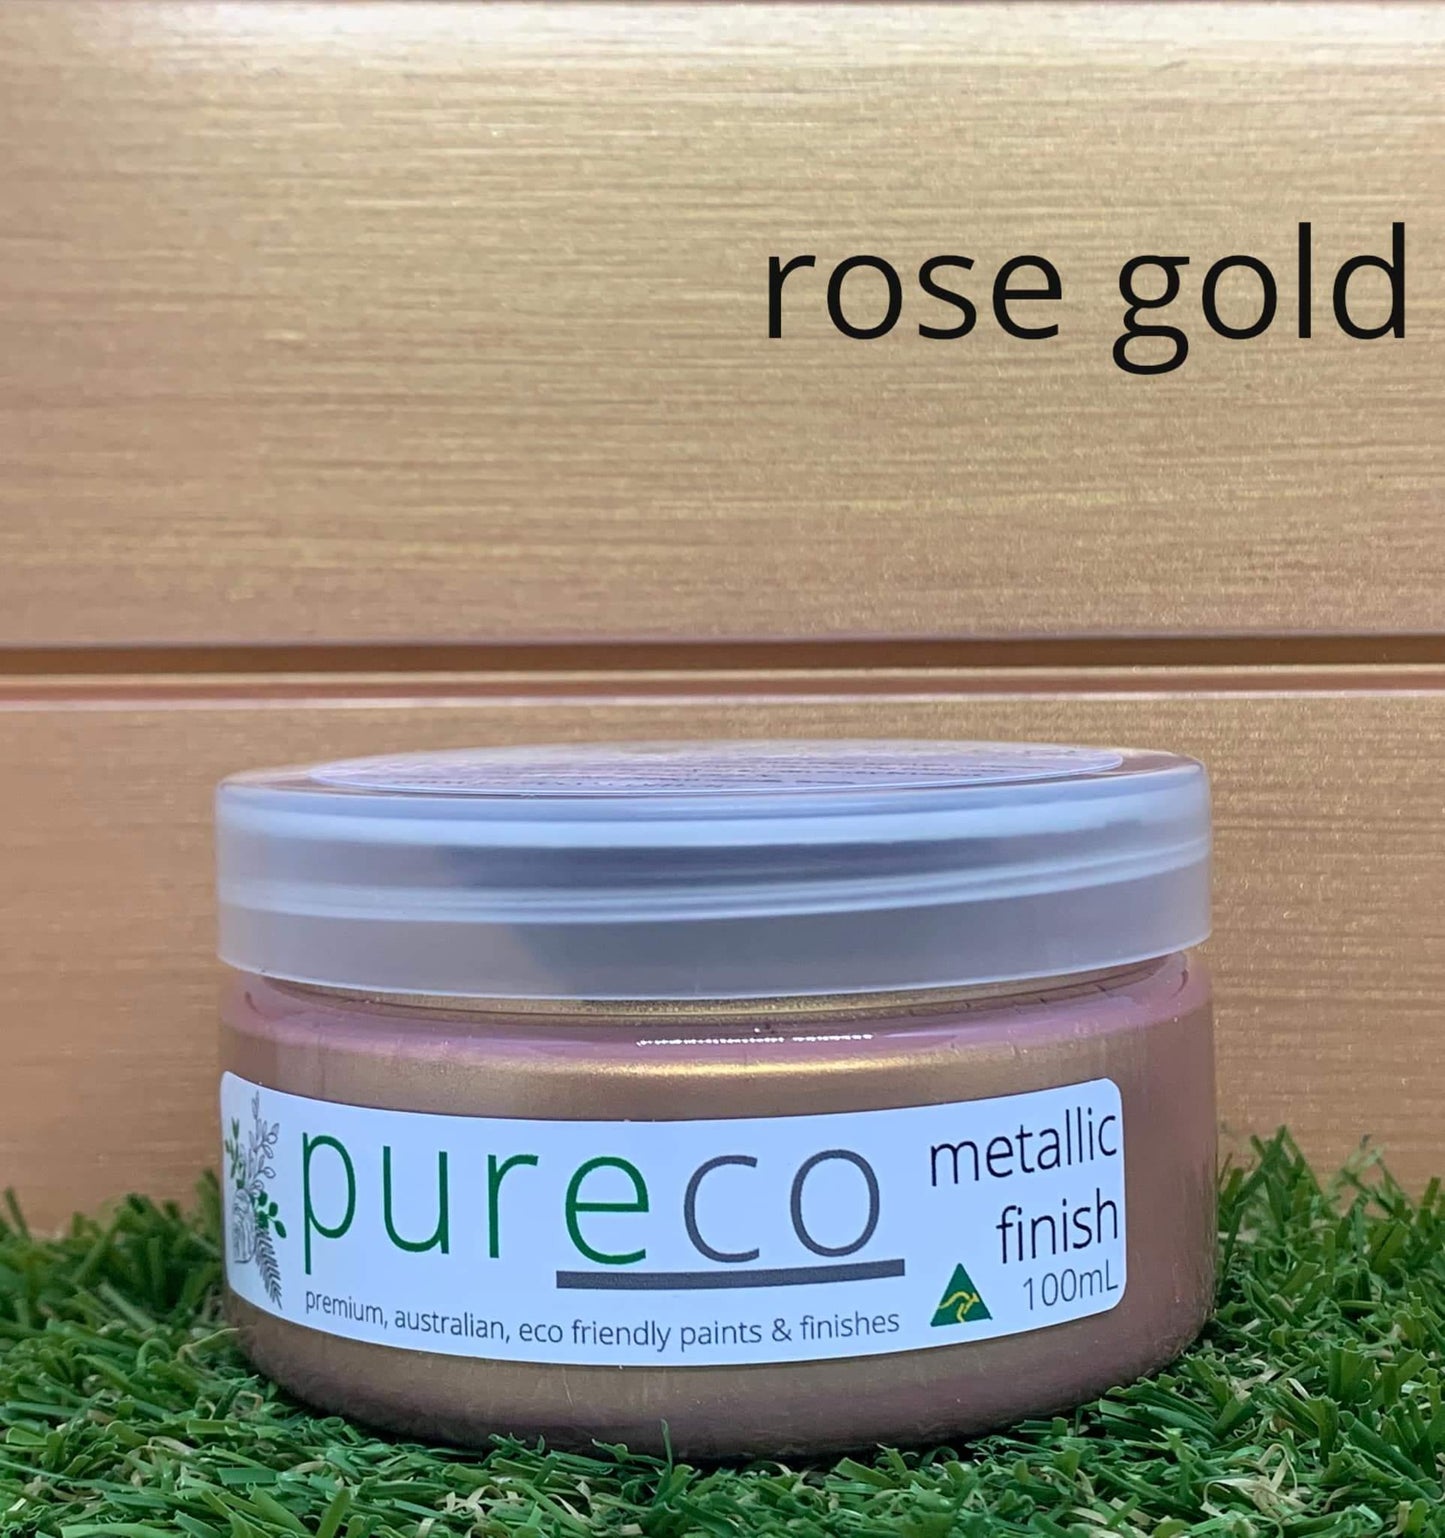 Pureco metallic finish Rose Gold